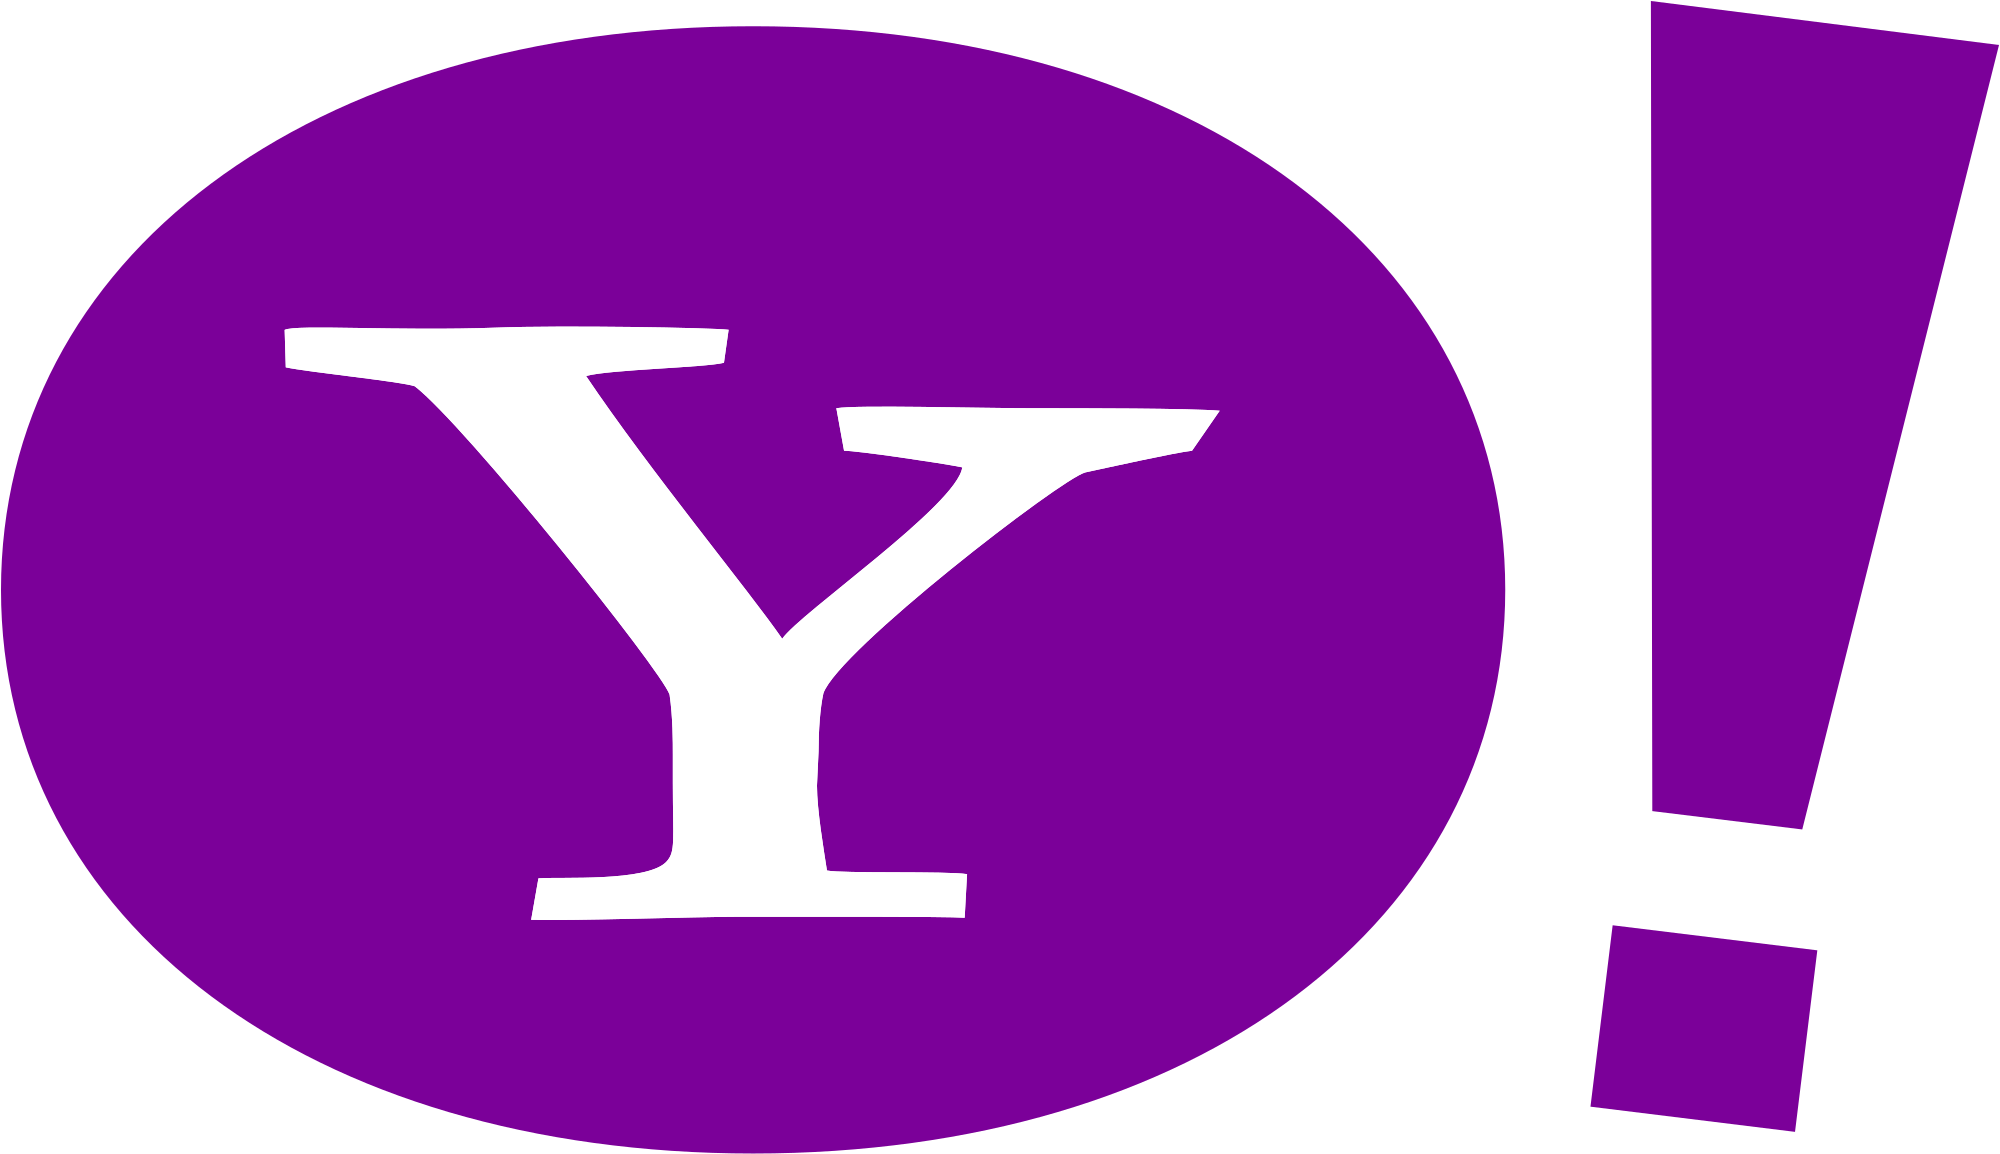 Yahoo free logo download png image #40442